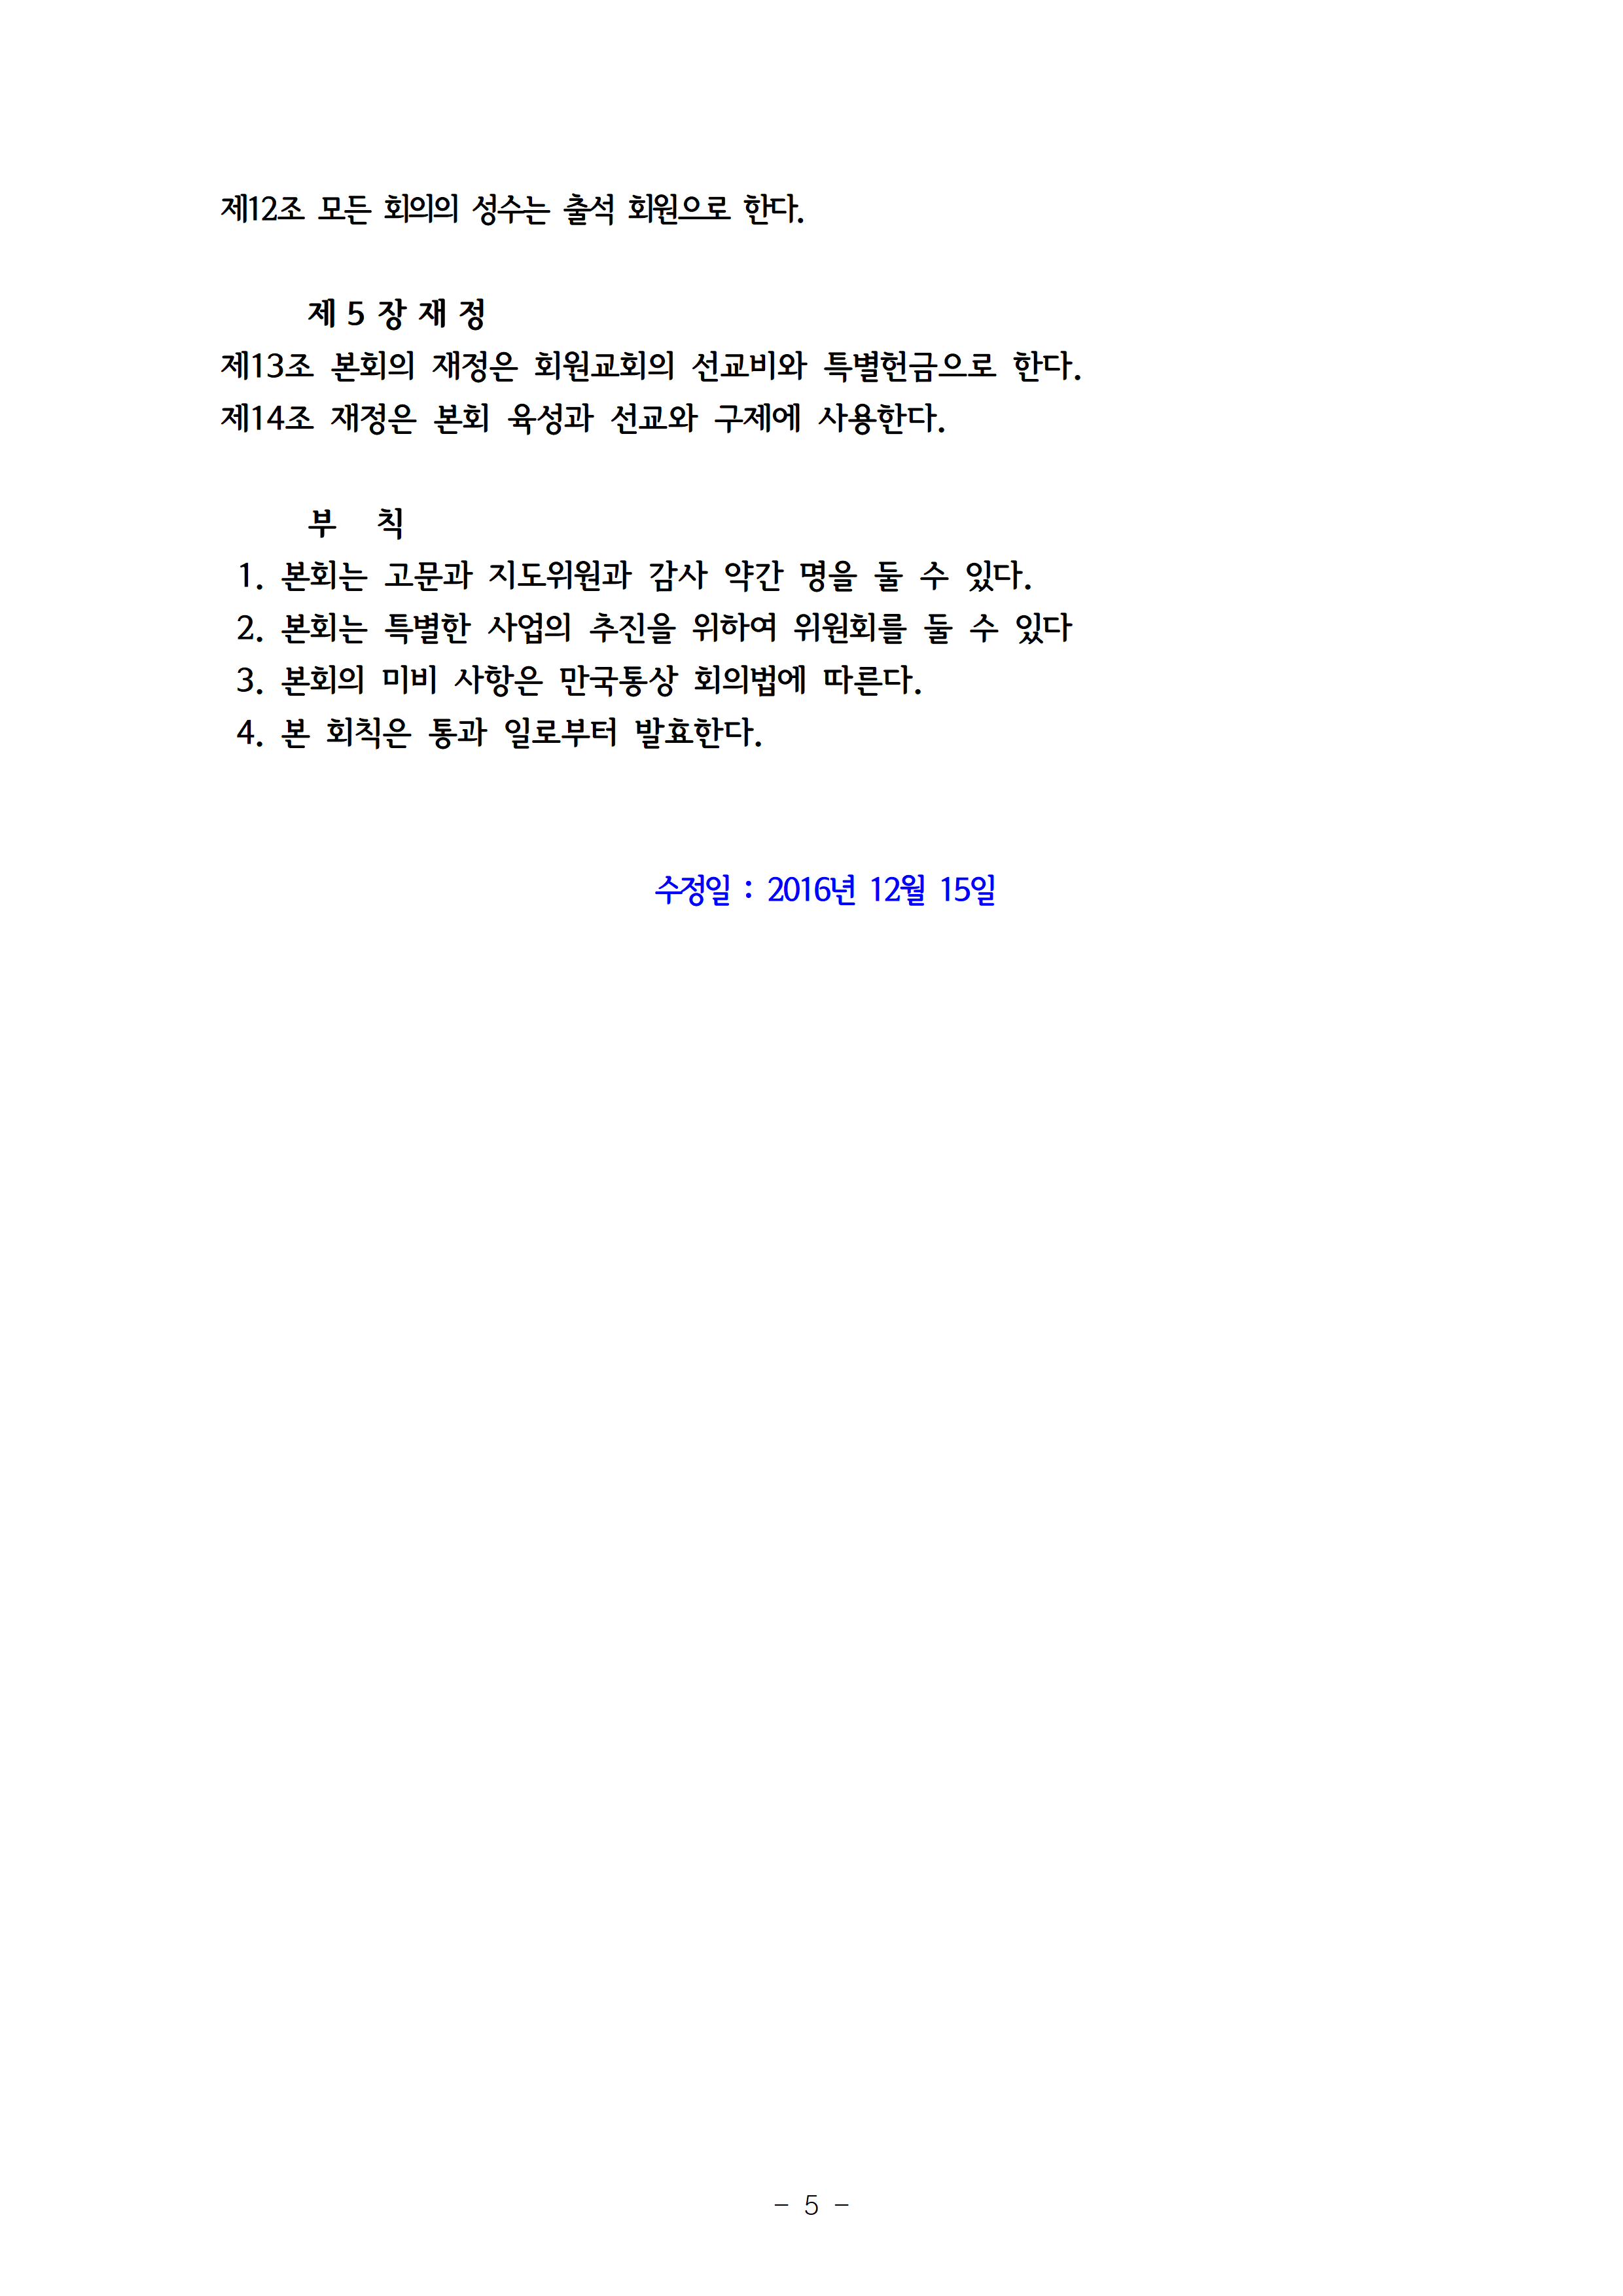 2023회기 서초교구협의회 정기총회자료(12.14.)006.png